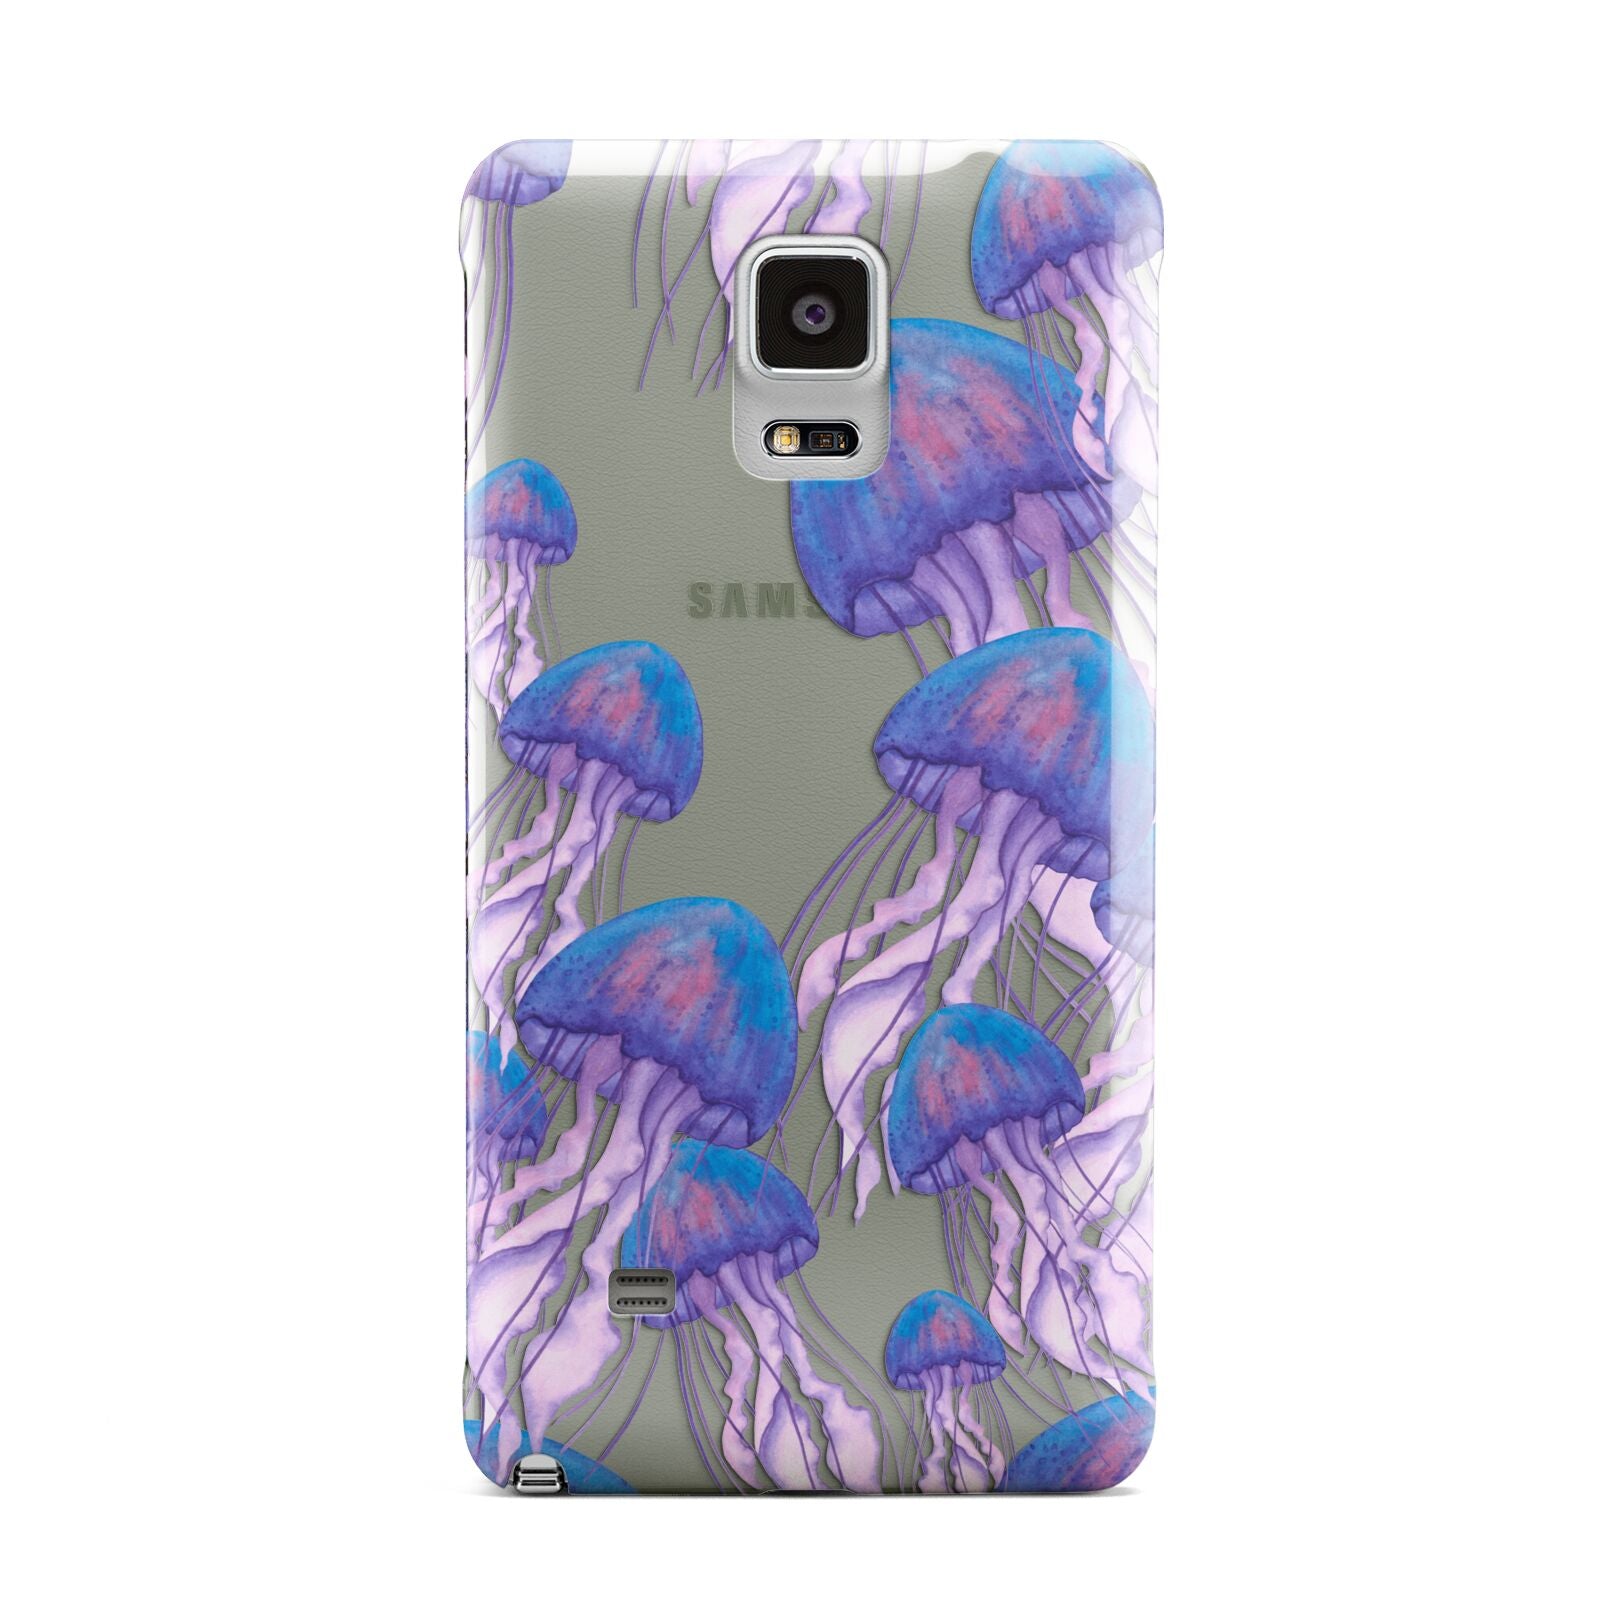 Jellyfish Samsung Galaxy Note 4 Case